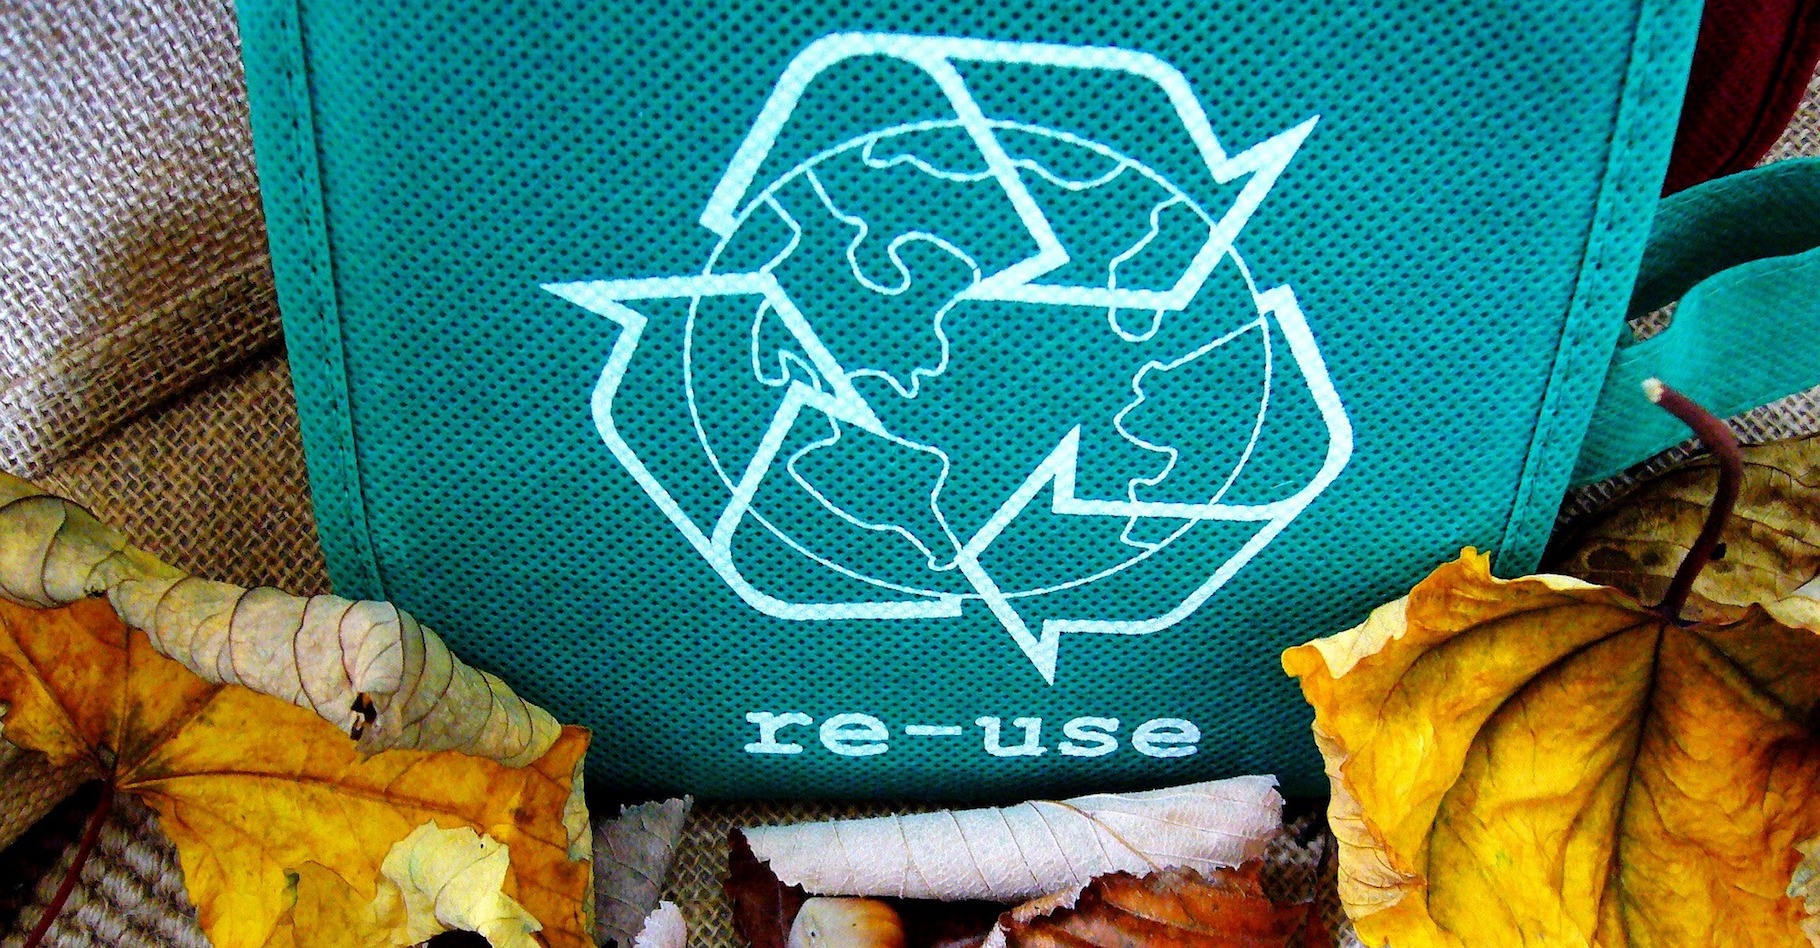 La laine de verre qui sert à l’isolation de nos maisons est recyclable. La vraie question qui se pose est : comment faire pour la recycler ? © 9355, Pixabay, CC0 Public Domain